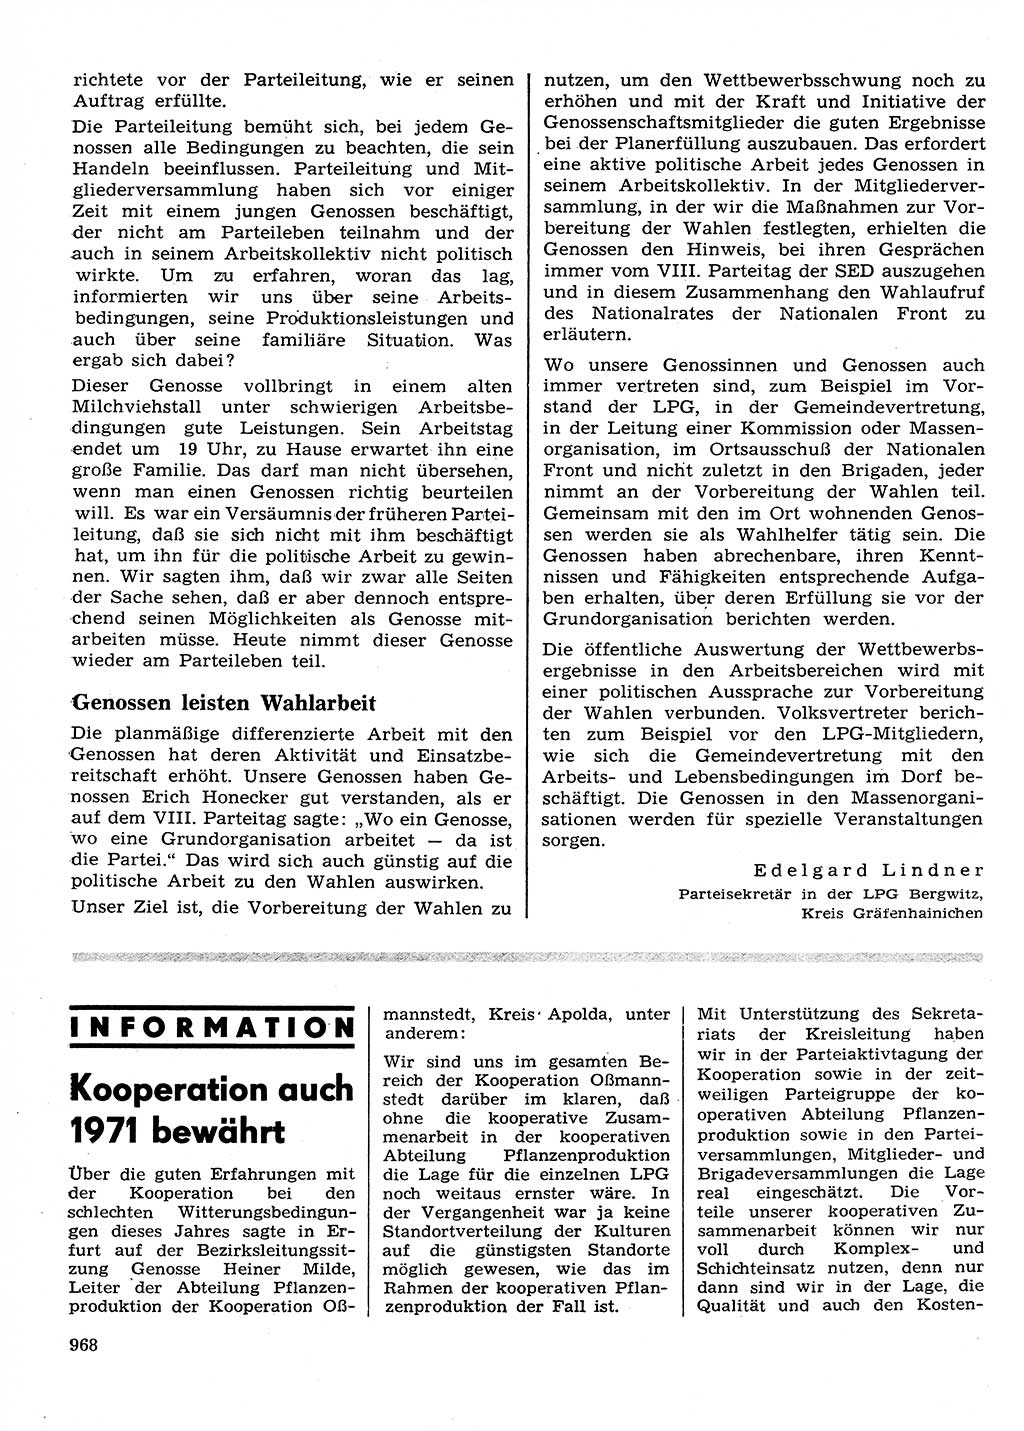 Neuer Weg (NW), Organ des Zentralkomitees (ZK) der SED (Sozialistische Einheitspartei Deutschlands) für Fragen des Parteilebens, 26. Jahrgang [Deutsche Demokratische Republik (DDR)] 1971, Seite 968 (NW ZK SED DDR 1971, S. 968)